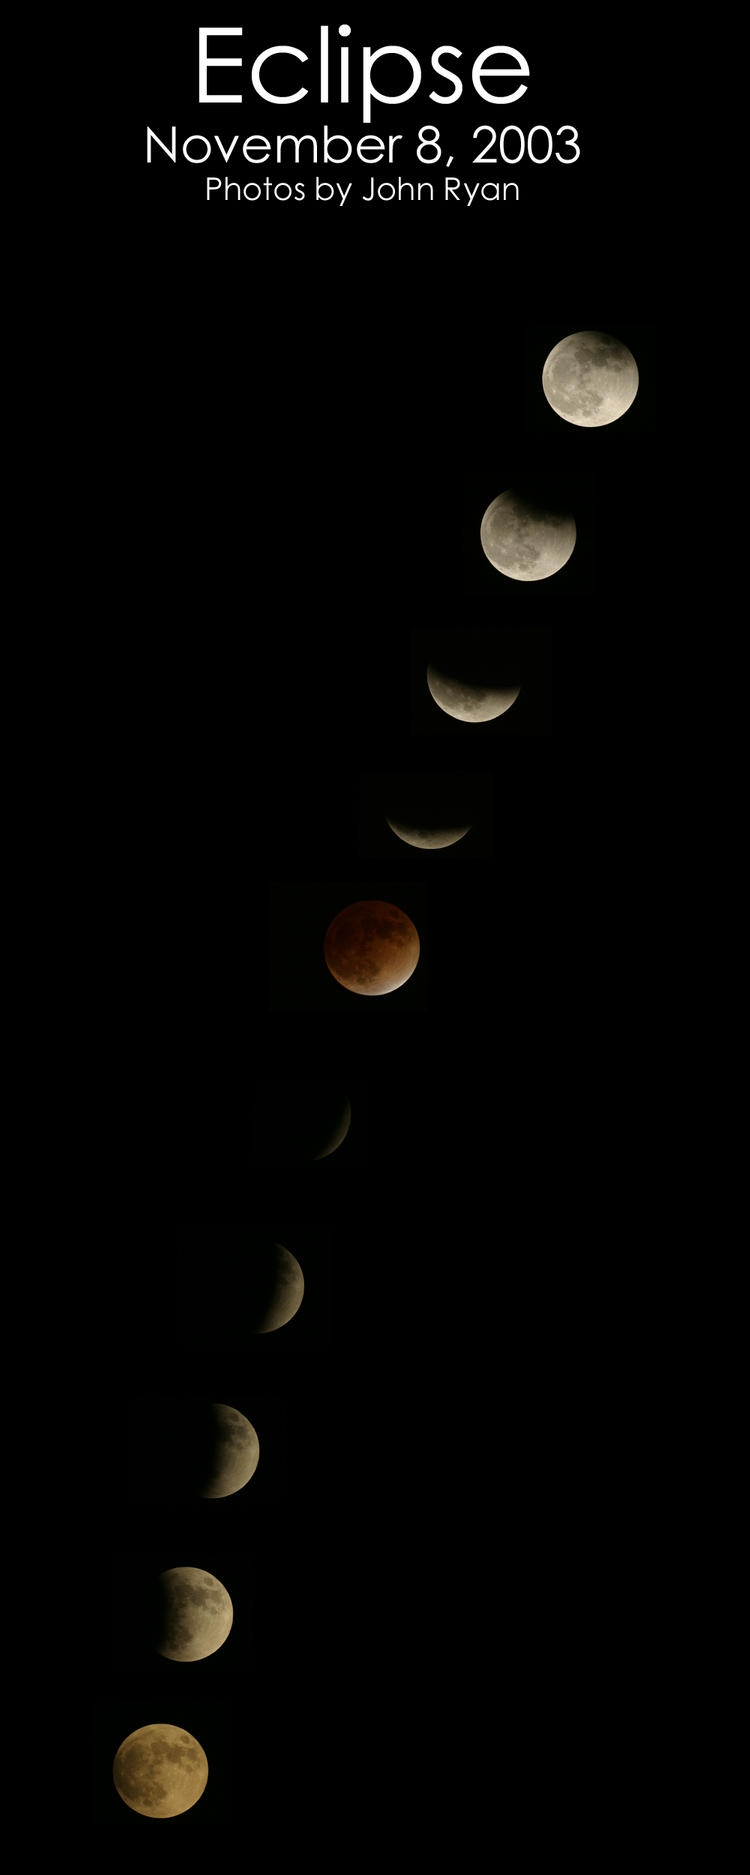 Lunar Eclipse of November 8, 2003